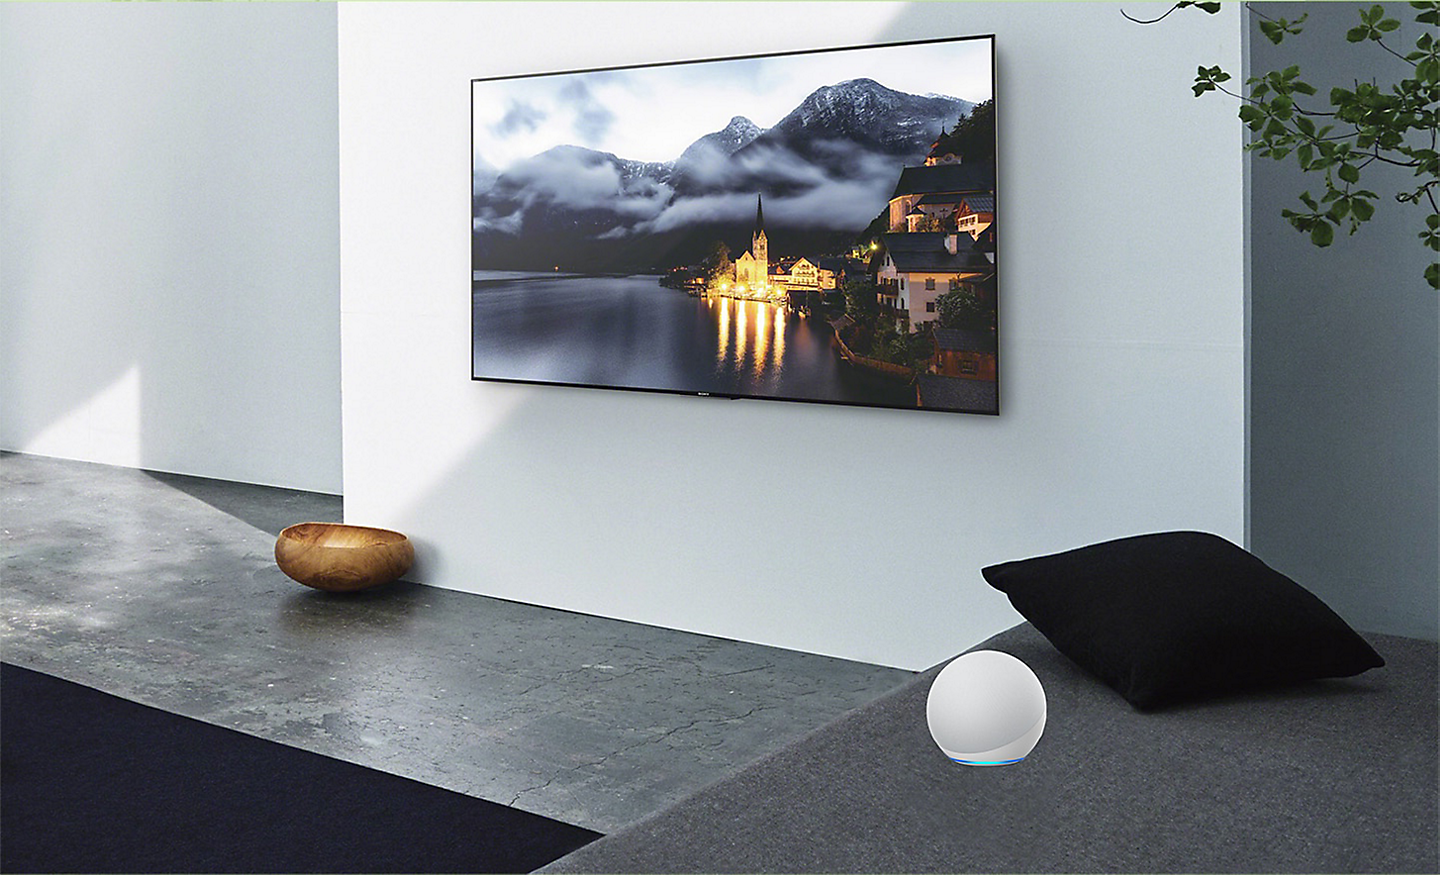 Prizor v dnevni sobi s prikazom televizorja na steni z napravo Alexa na strani